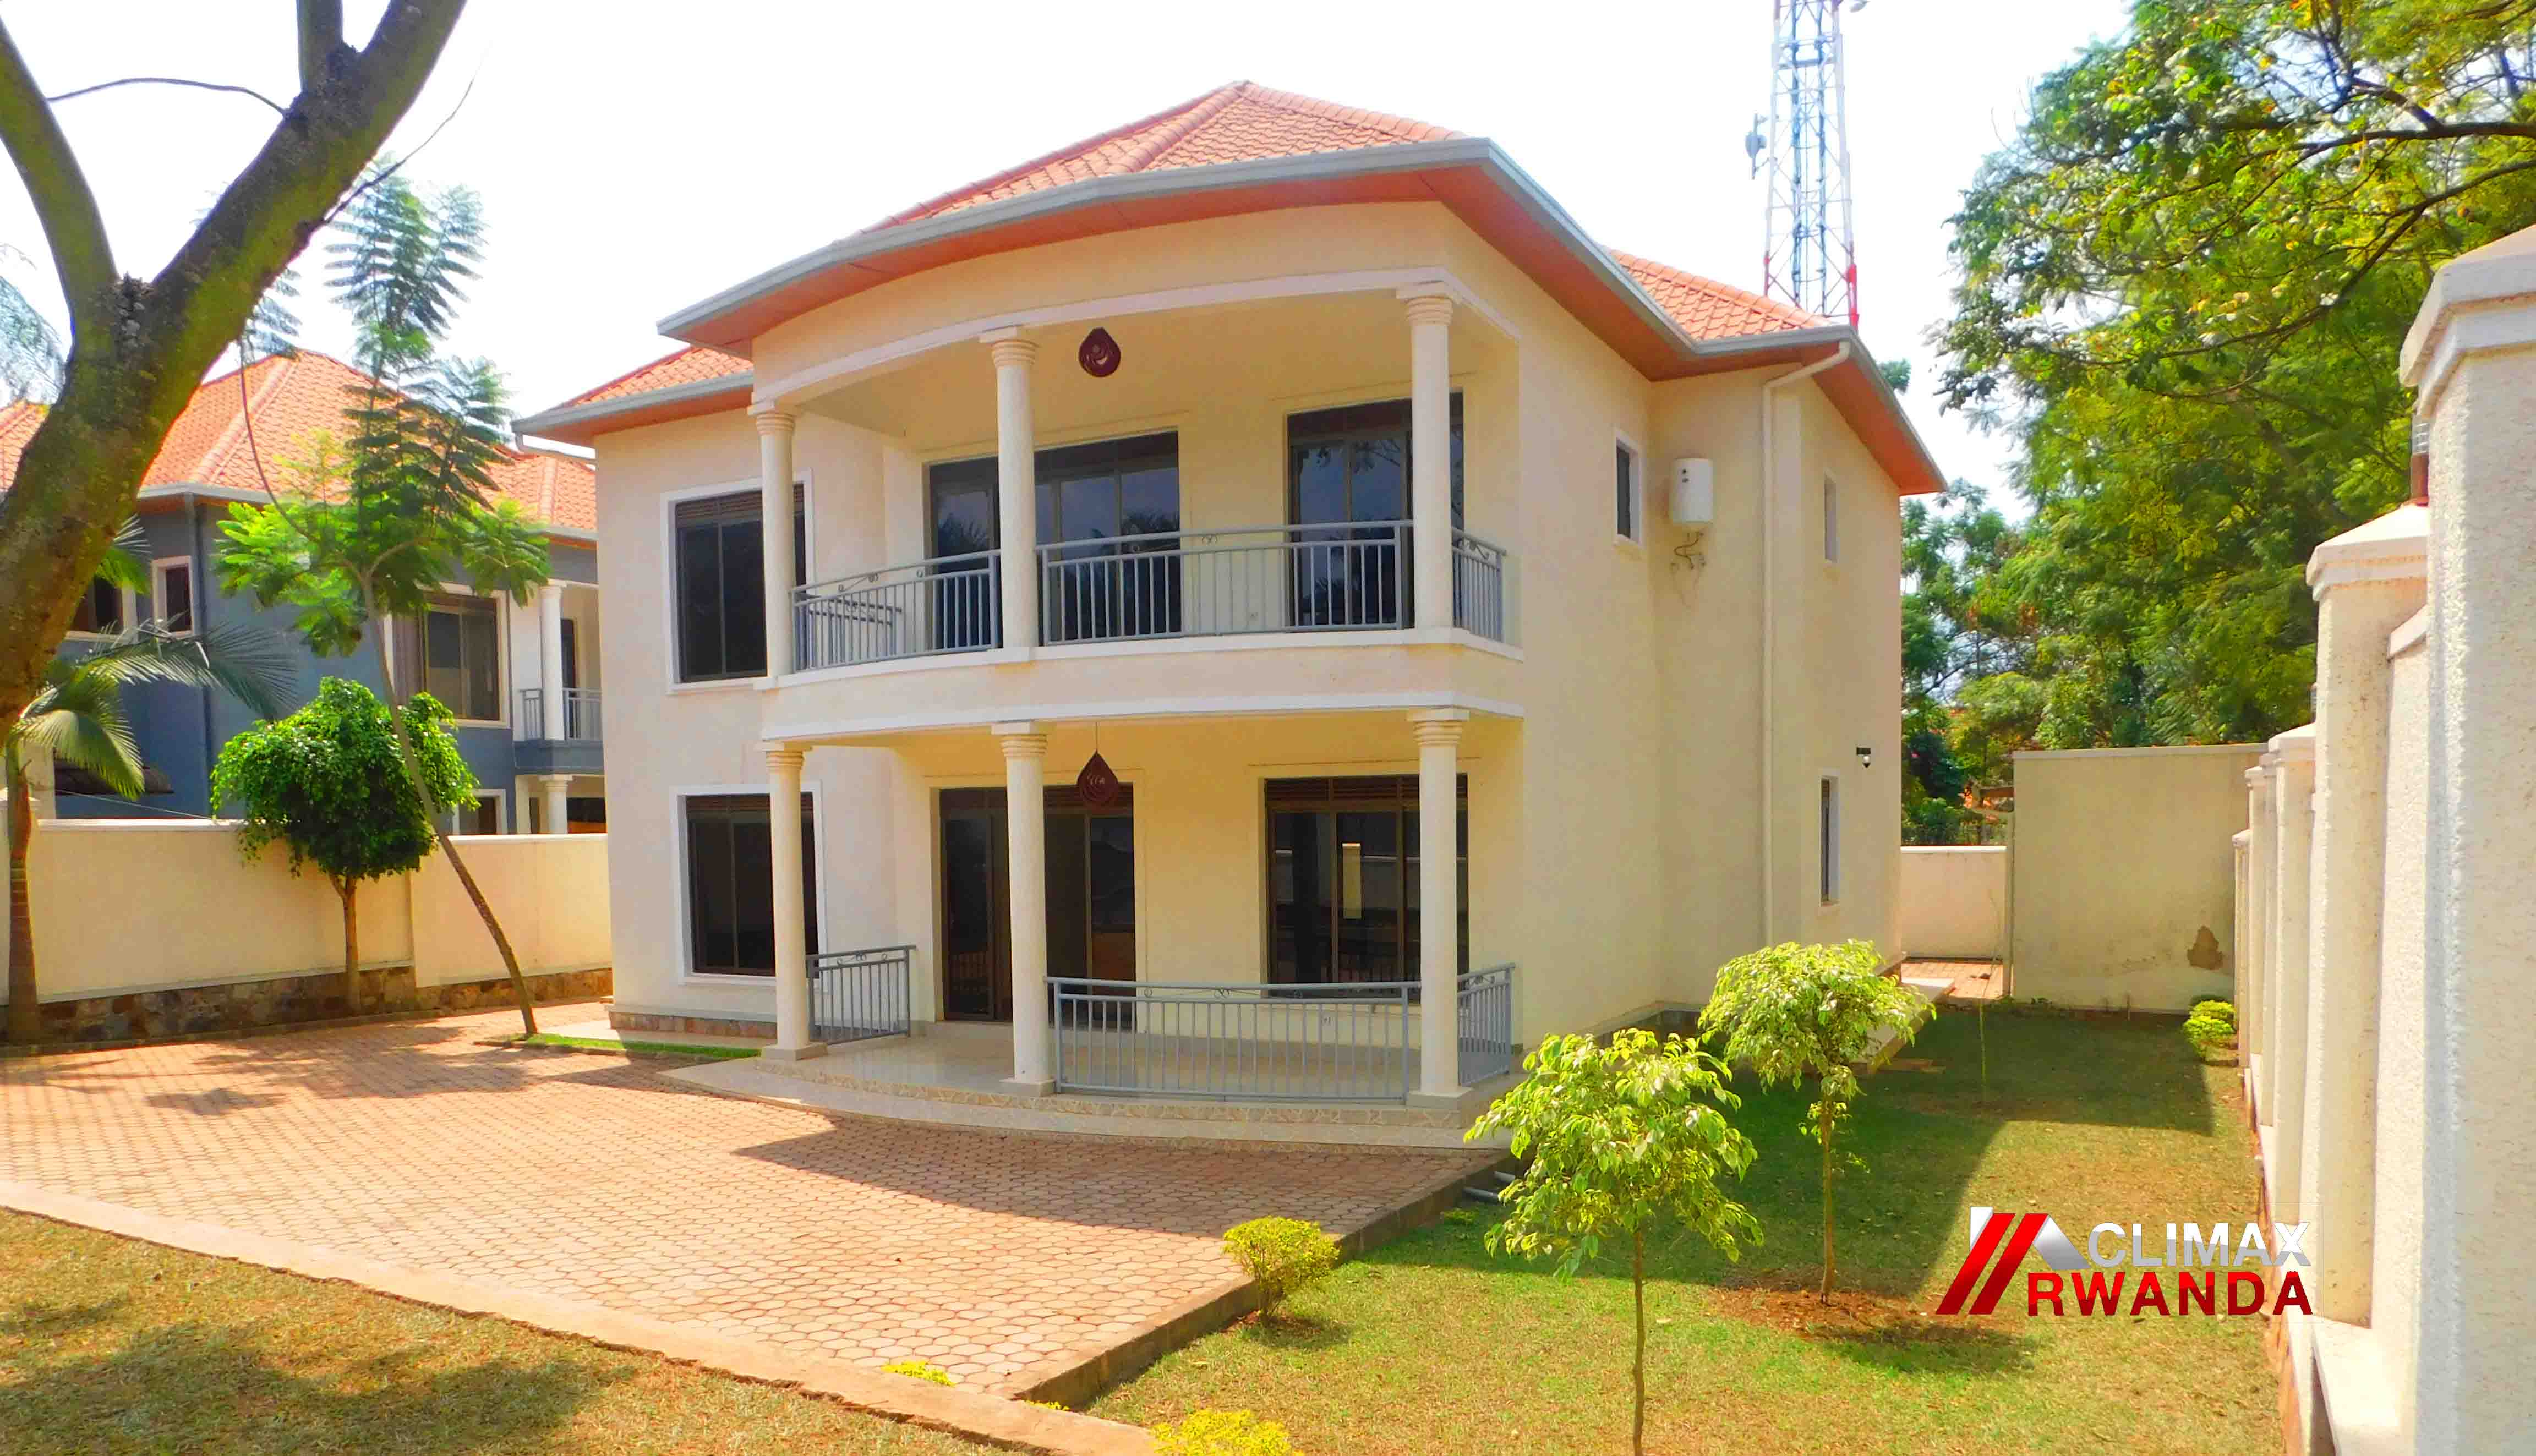 Unfurnished Mansion for Rent in Kagugu, Kigali